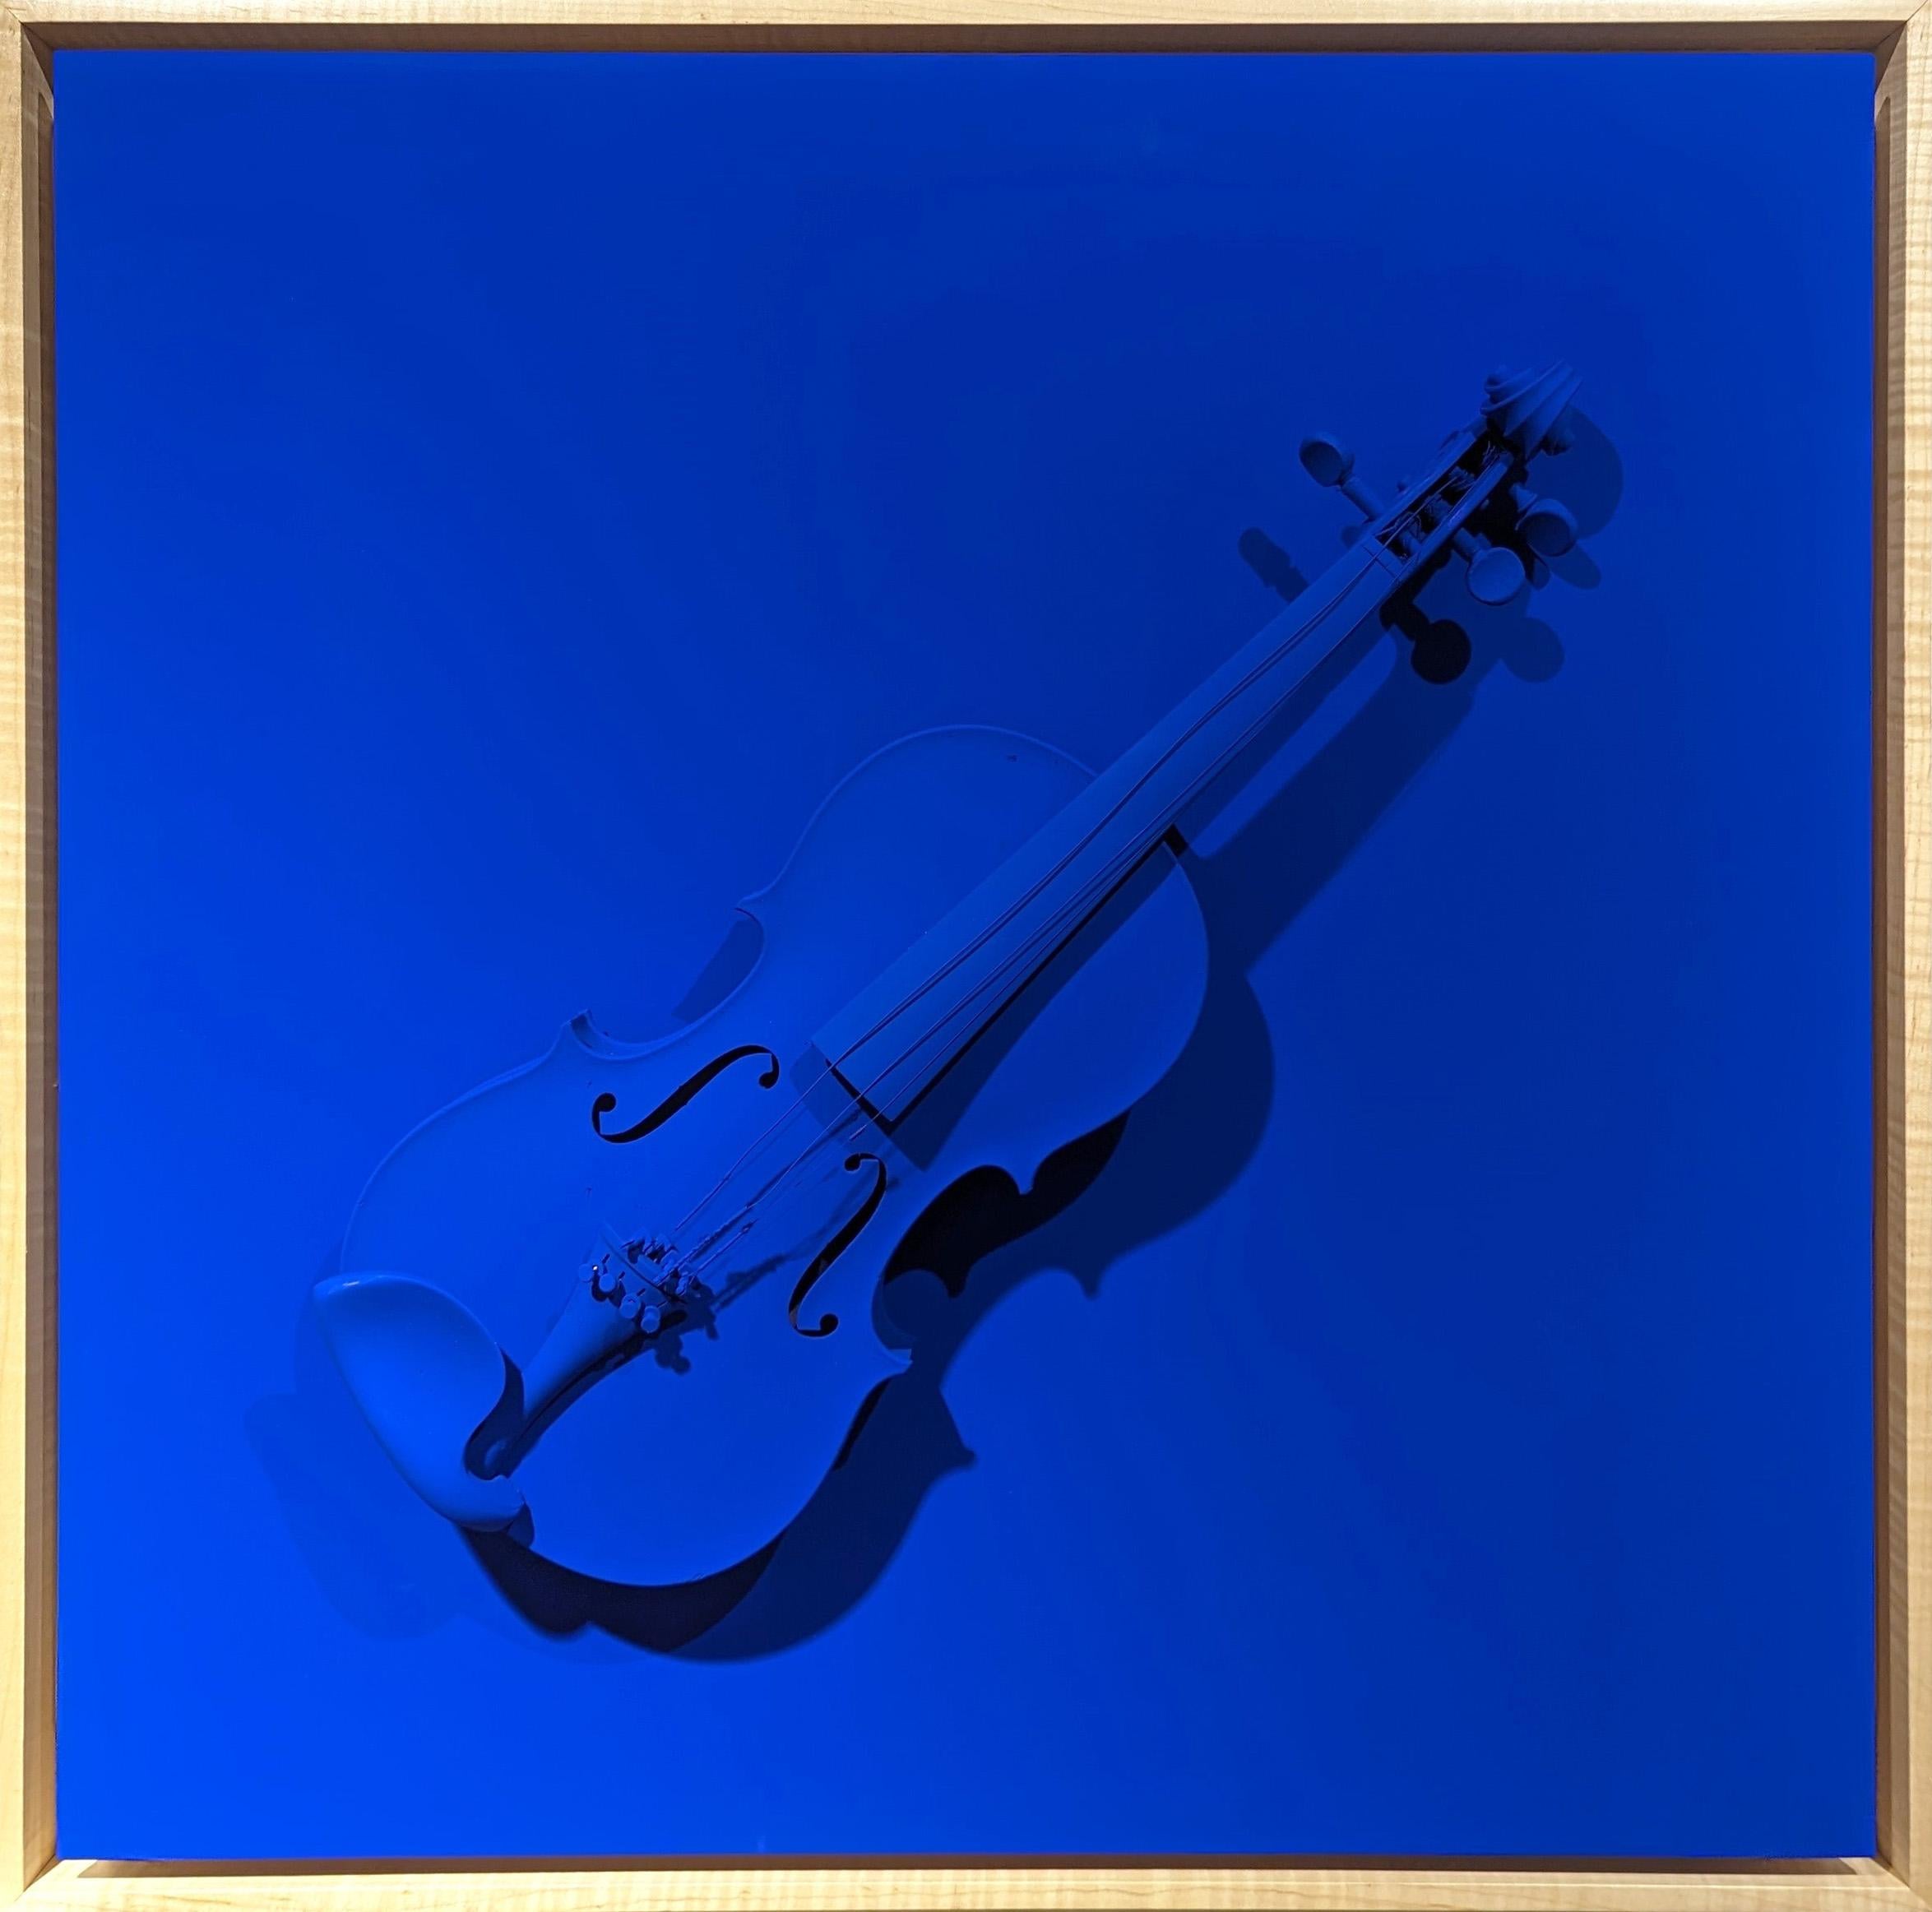 "Pearlman Blue" Zeitgenössisches hellblaues Fundstück Geigenskulptur Malerei – Mixed Media Art von Paul Reeves